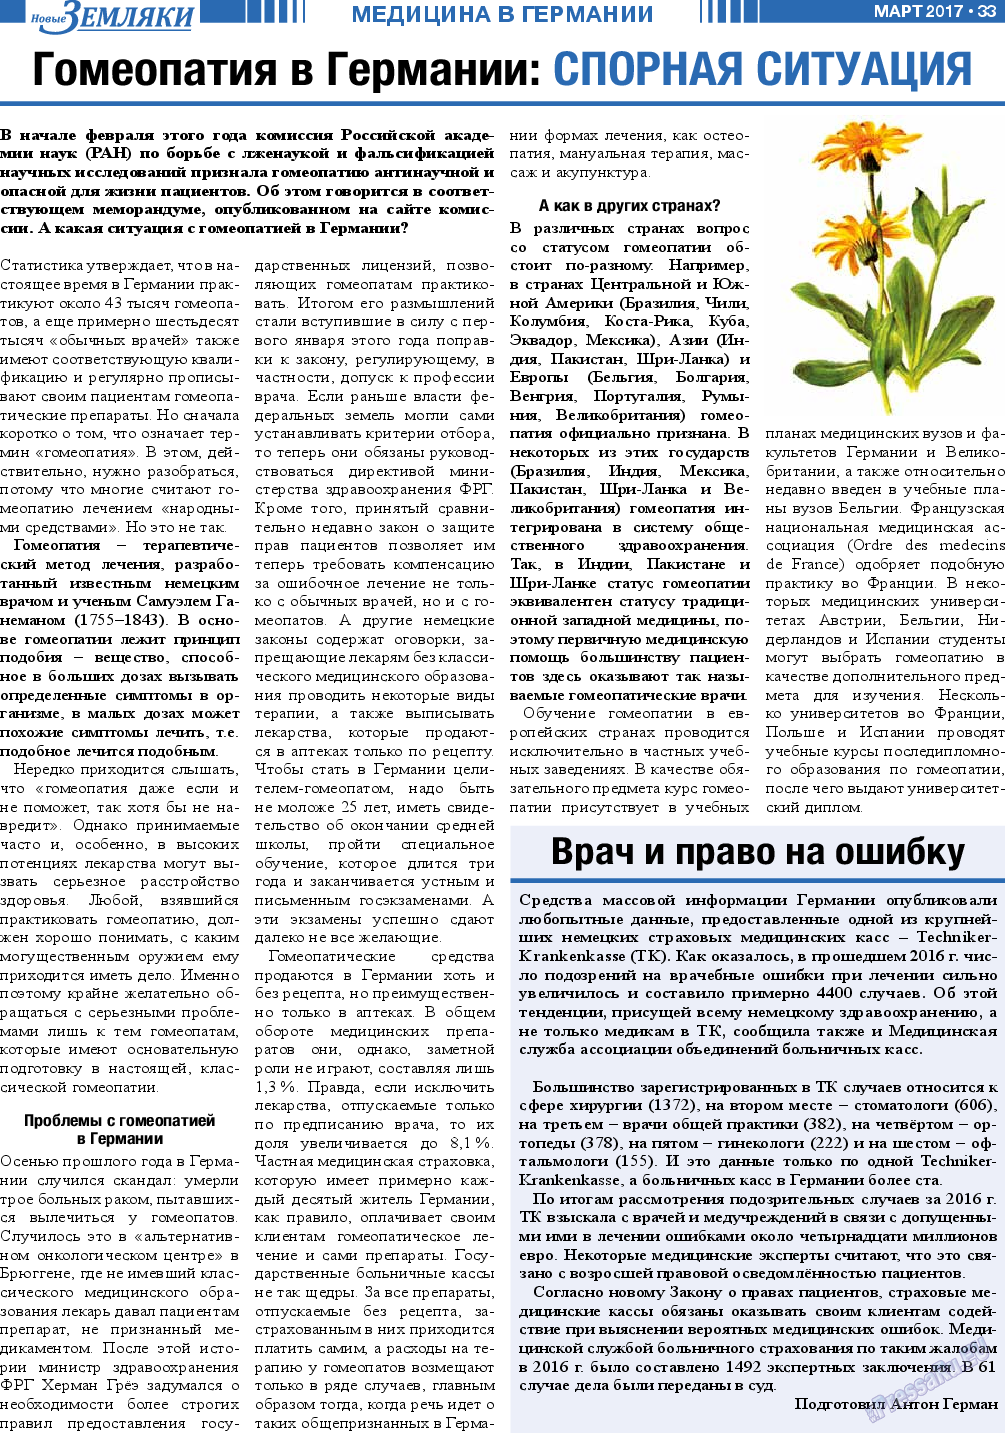 Новые Земляки, газета. 2017 №3 стр.33